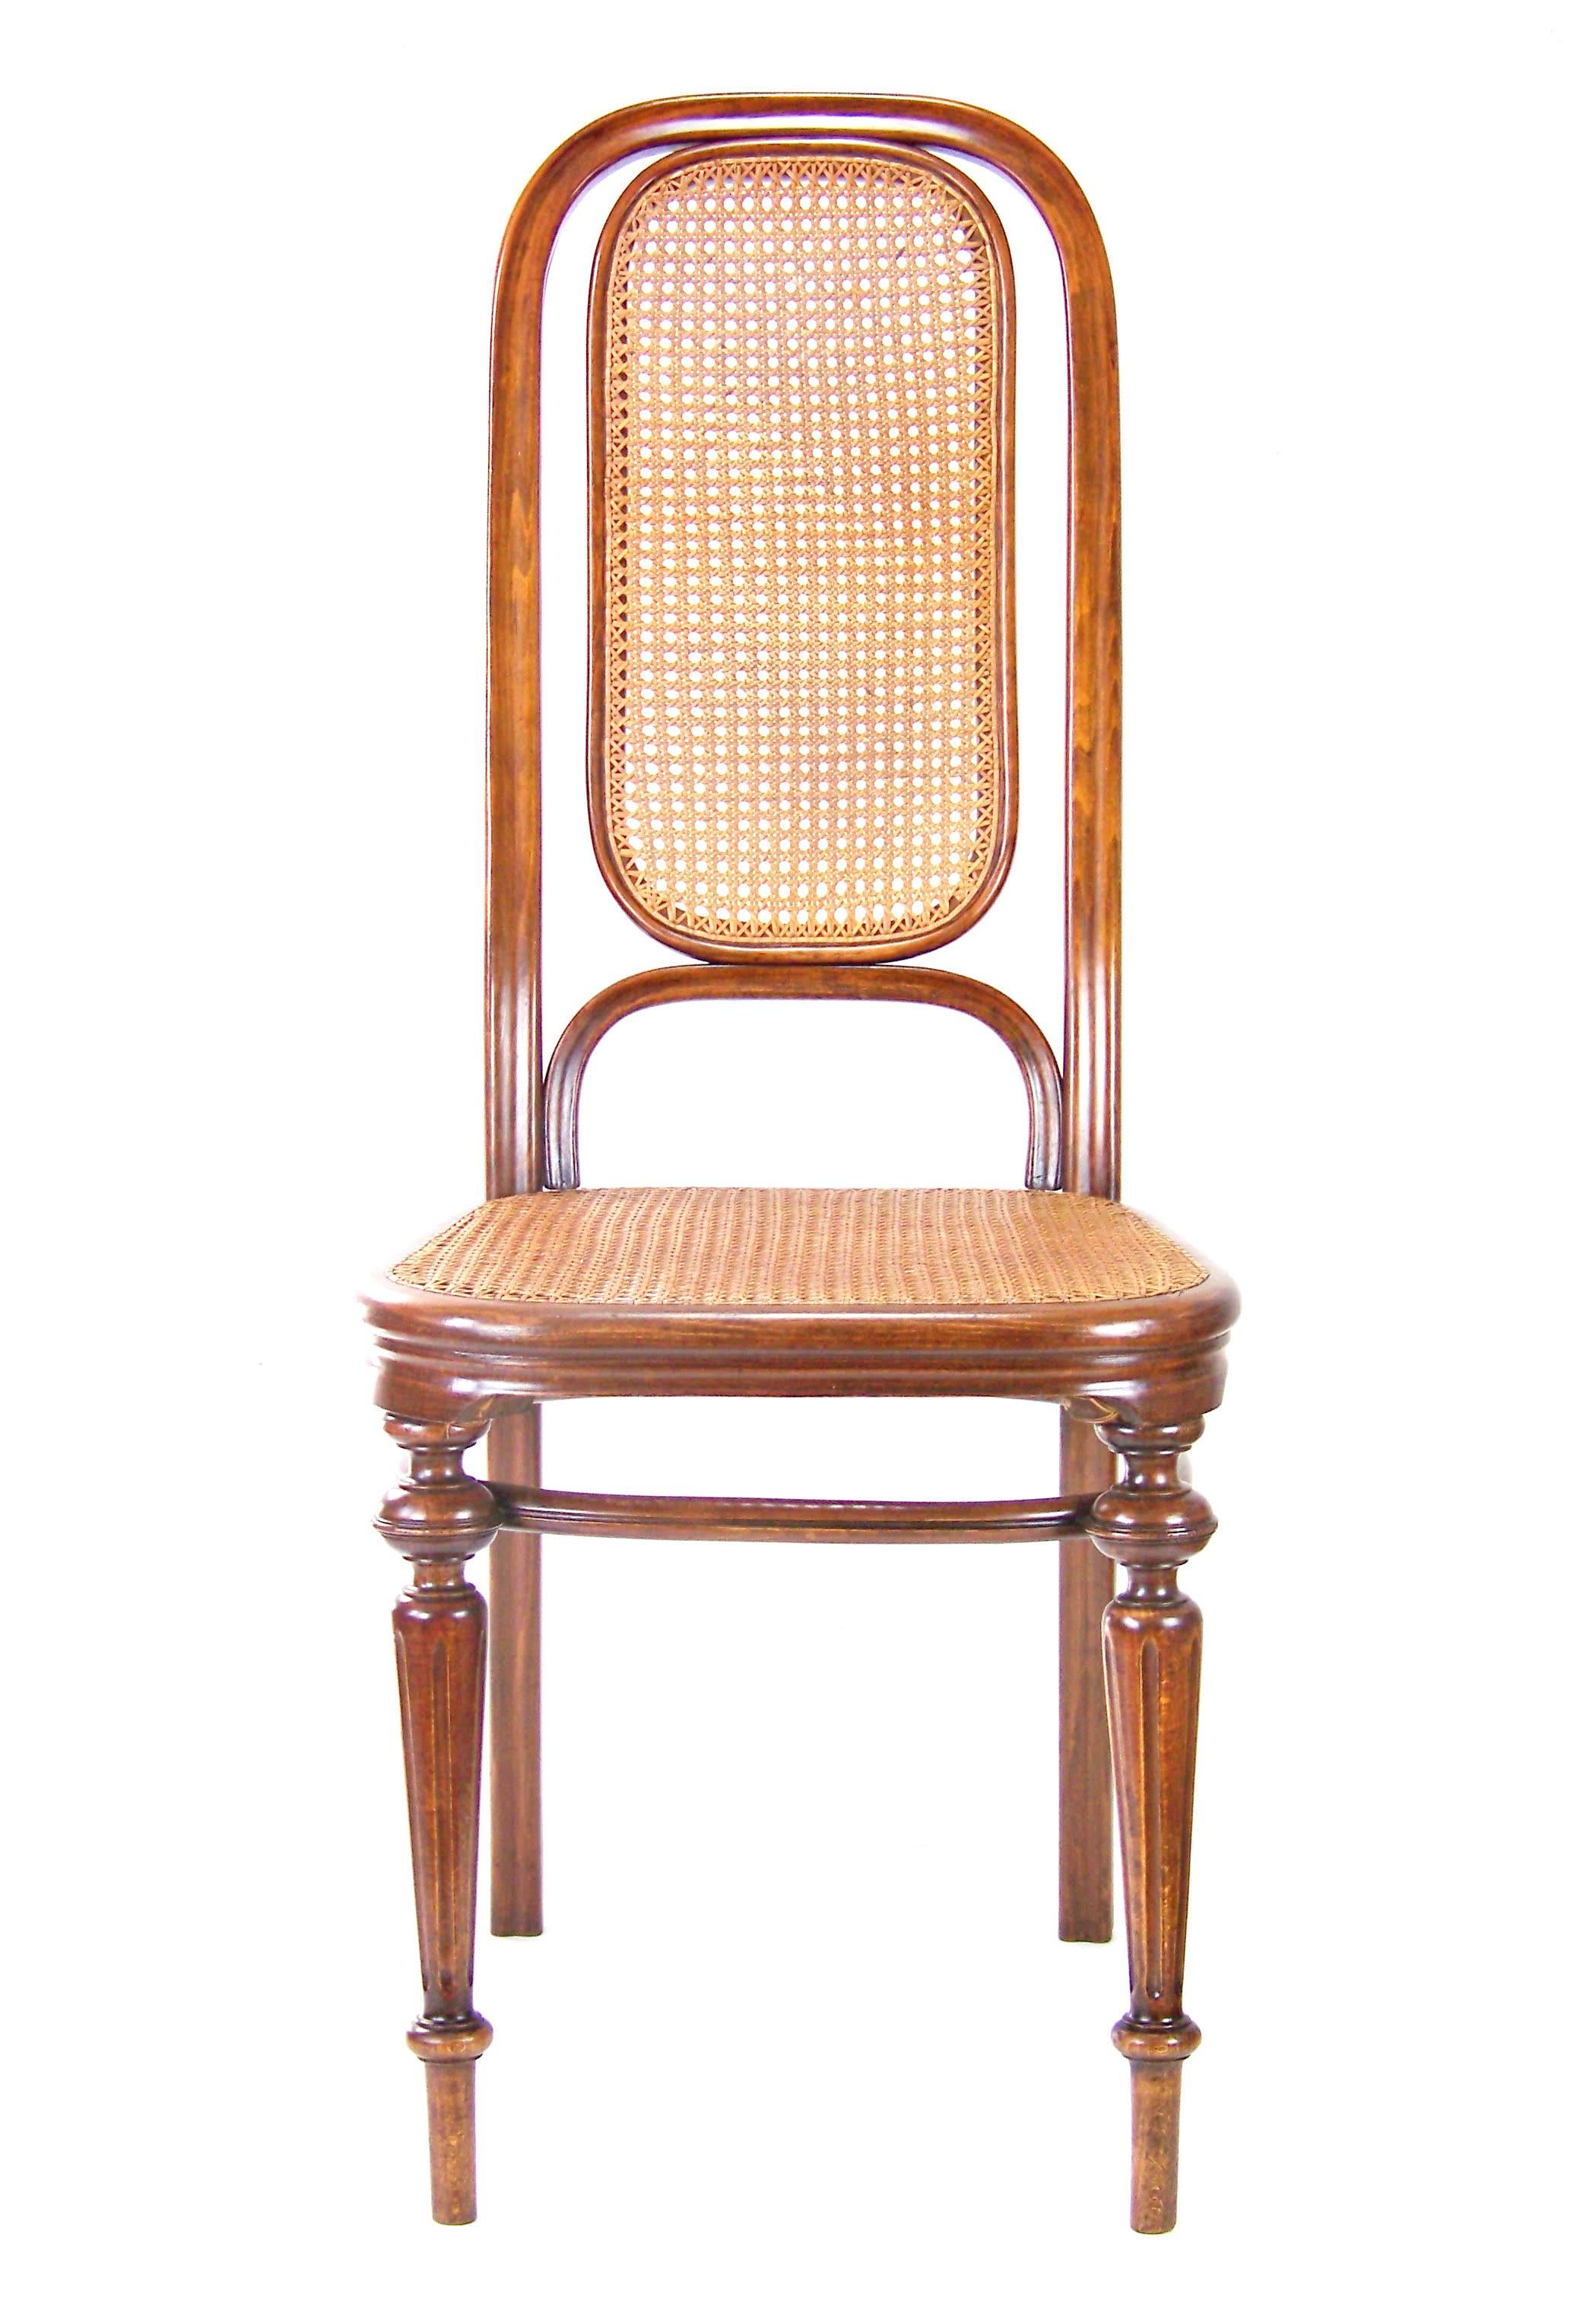 Chair Thonet Nr.32, since 1883.